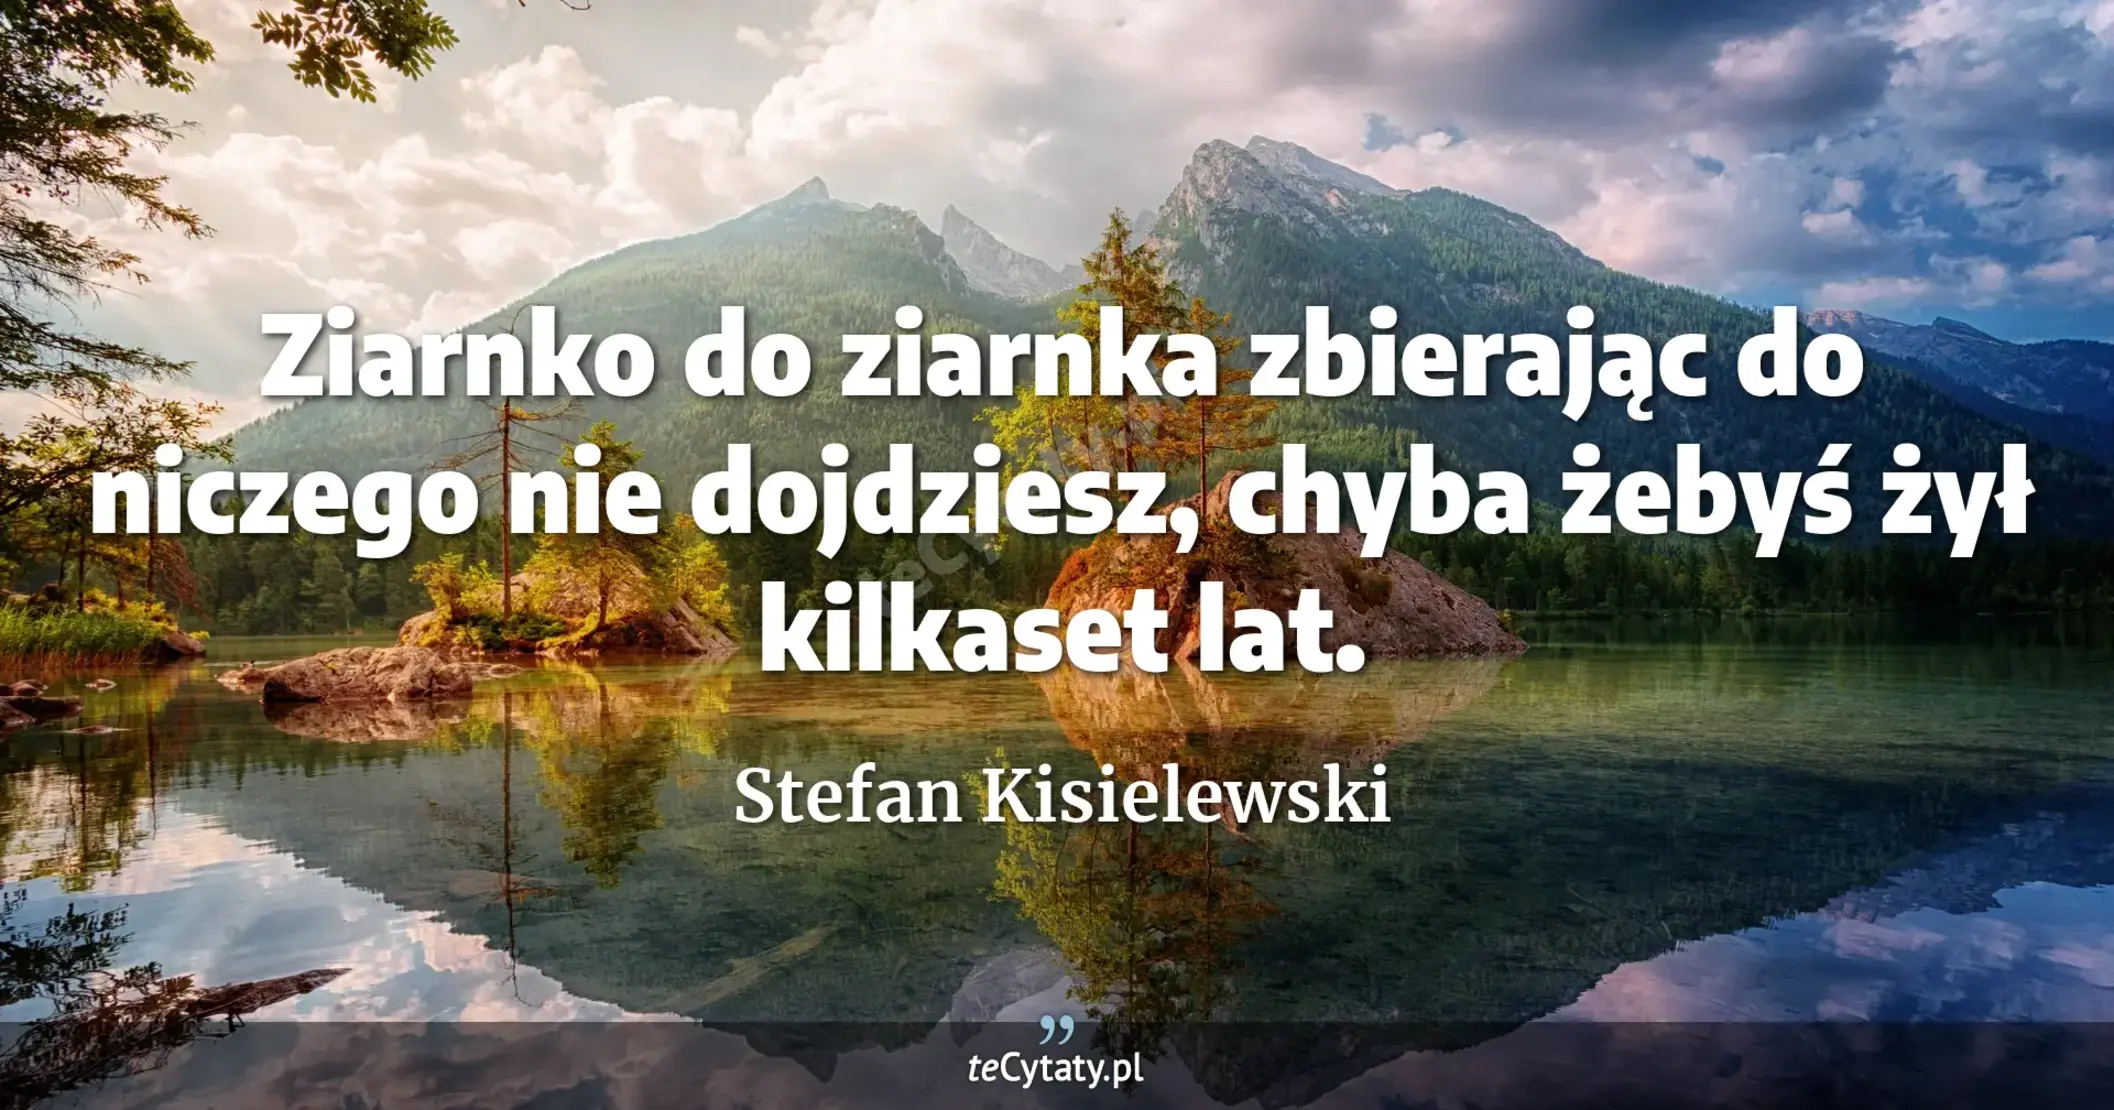 Ziarnko do ziarnka zbierając do niczego nie dojdziesz, chyba żebyś żył kilkaset lat. - Stefan Kisielewski